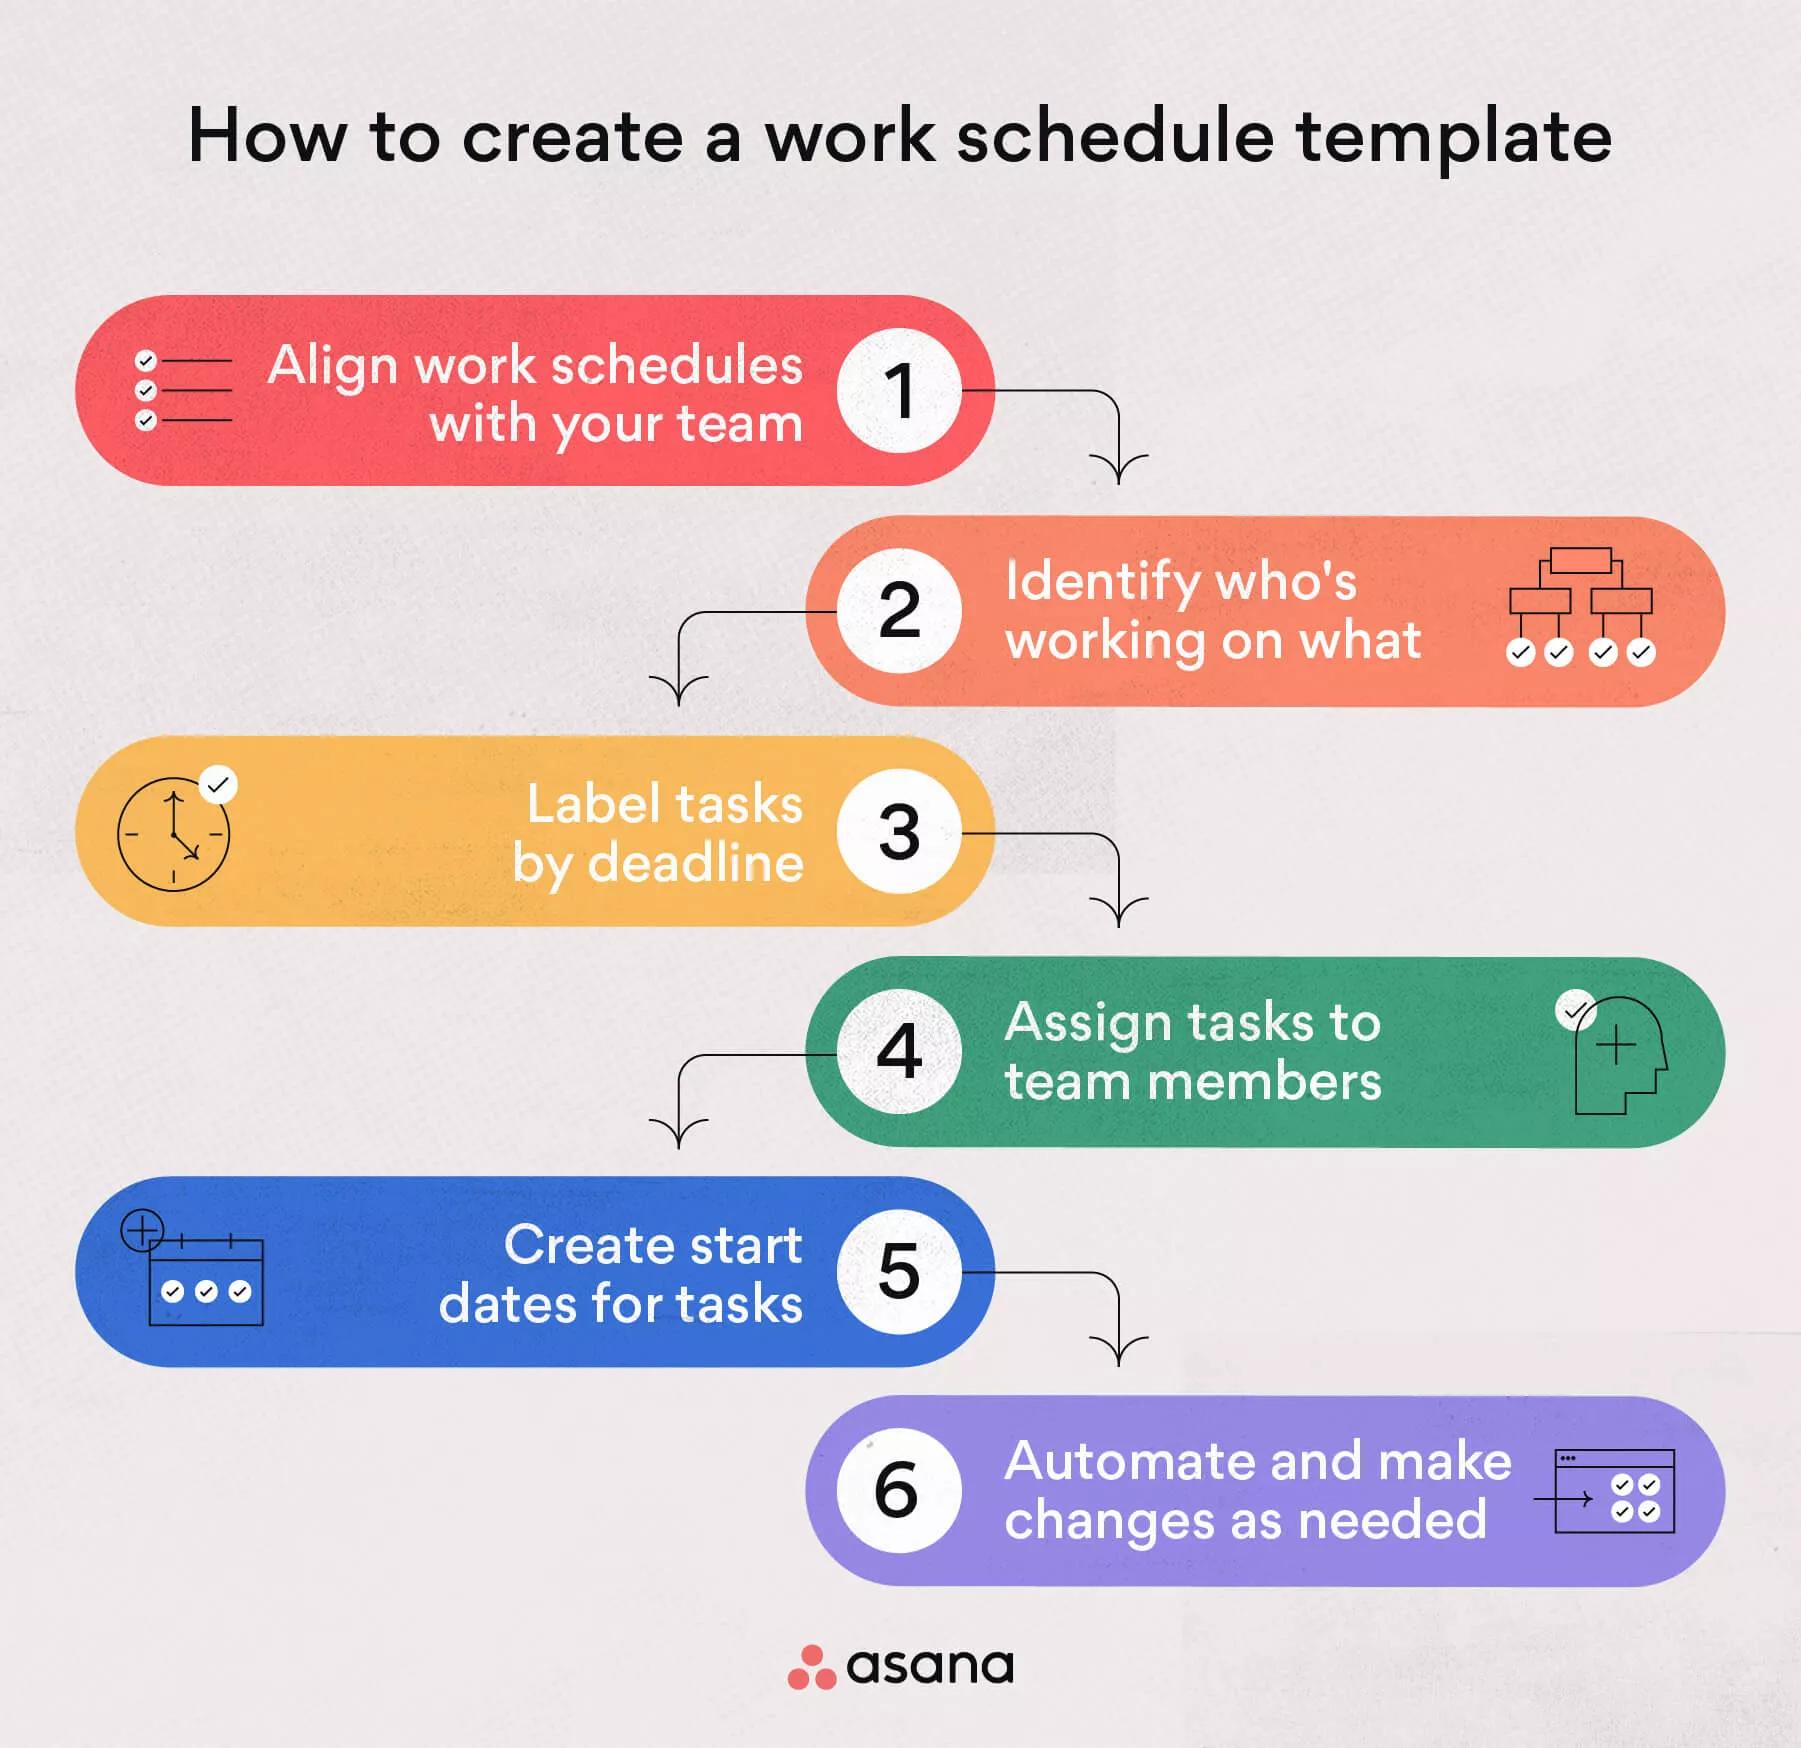 make employee work schedule